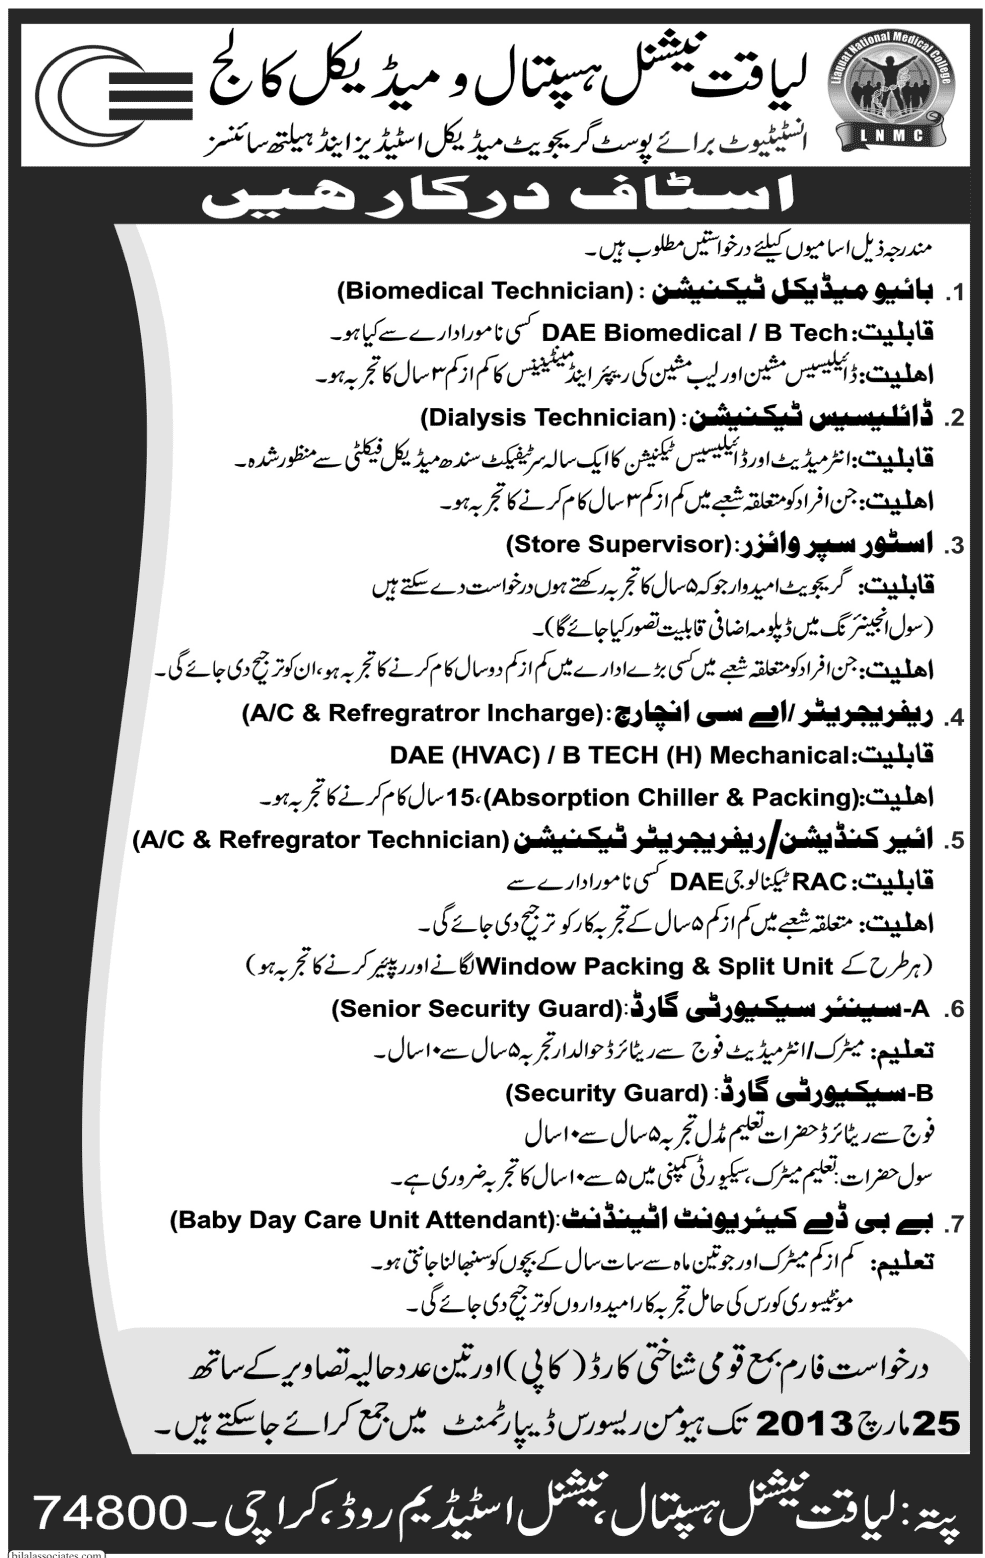 Liaquat National Hospital & Medical College (LNMC) Karachi Jobs 2013 for Technicians & Staff